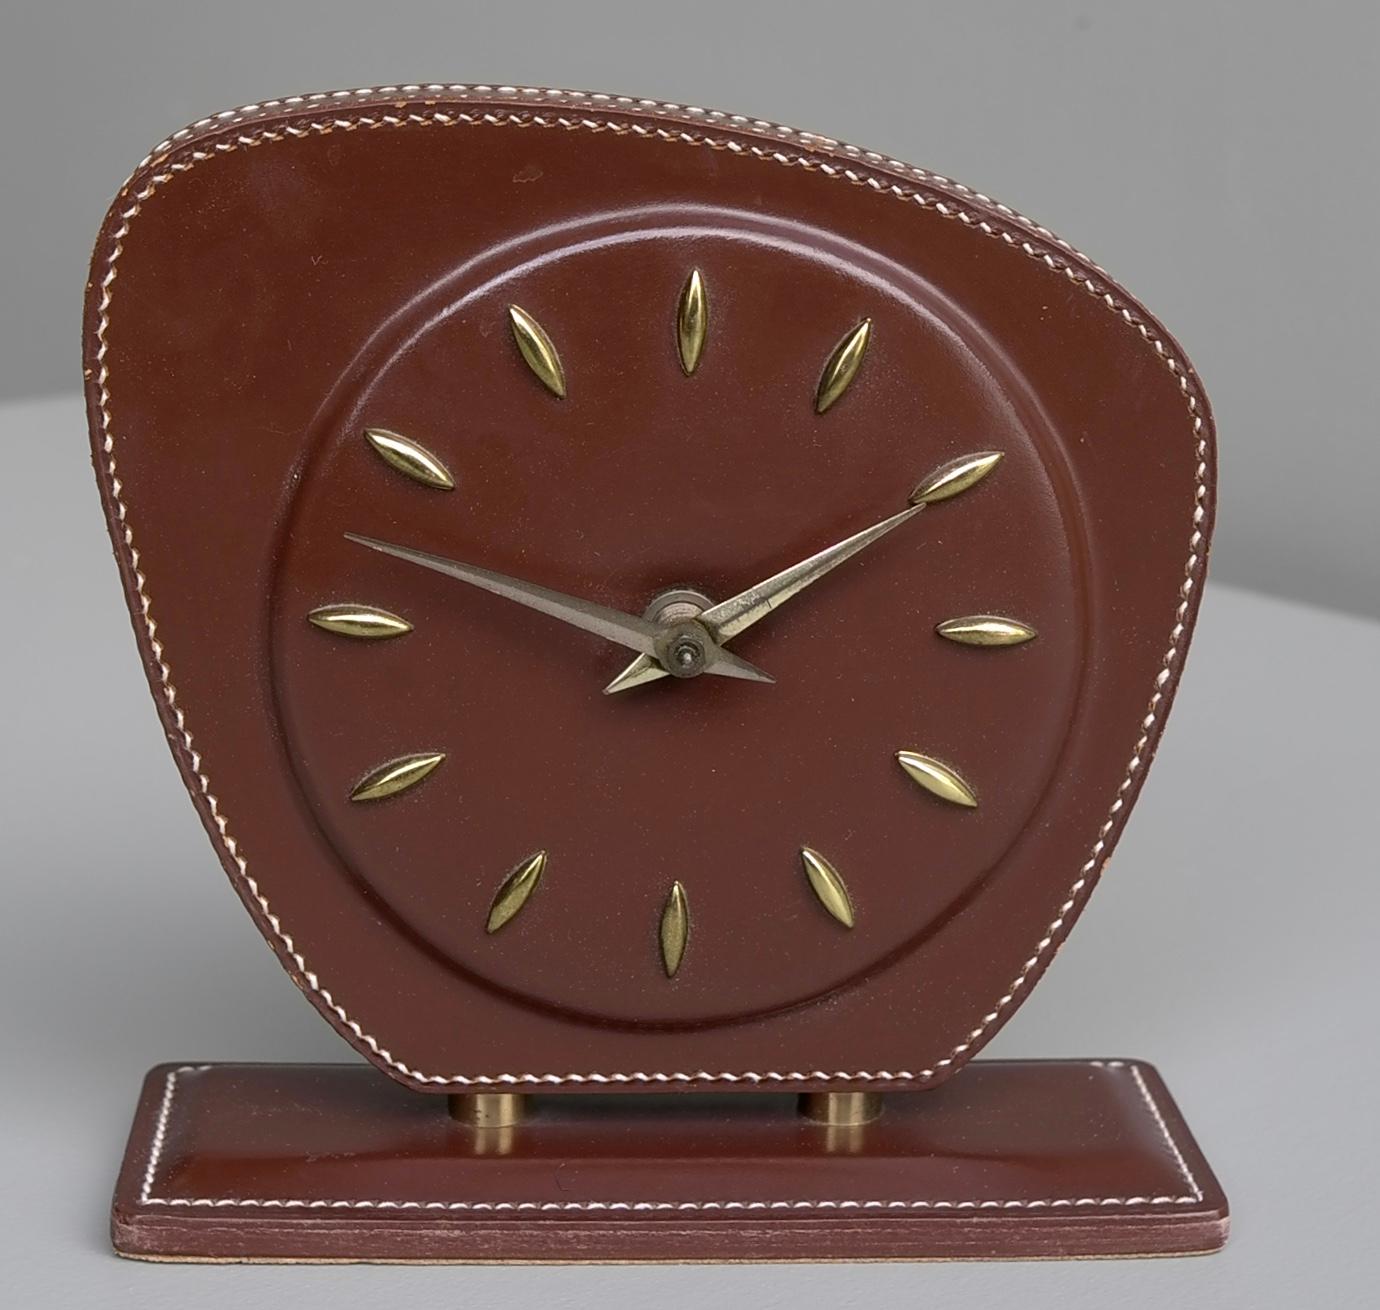 Horloge française en cuir brun cousu main, attribuée à Jacques Adnet, années 1950.